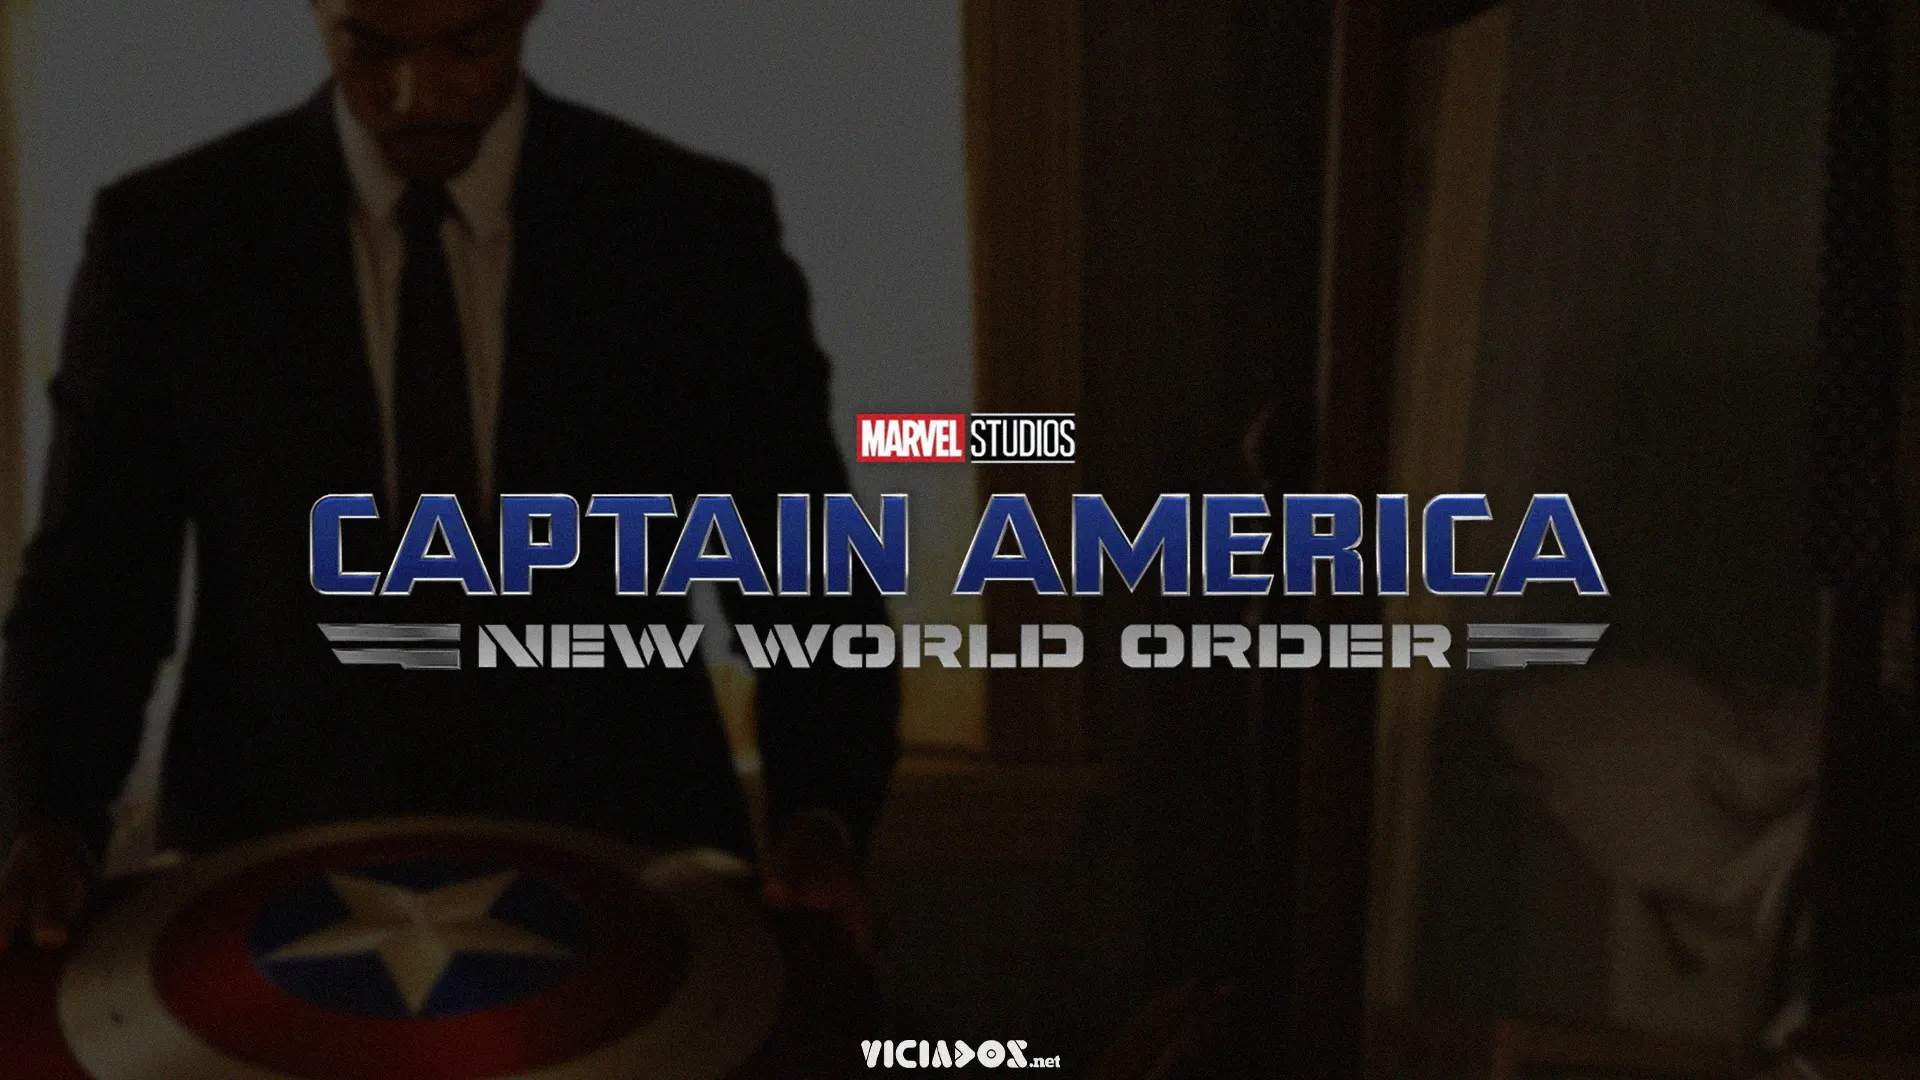 Capitão América 4 | Insider aponta que filme terá várias versões de Hulk 2022 Viciados